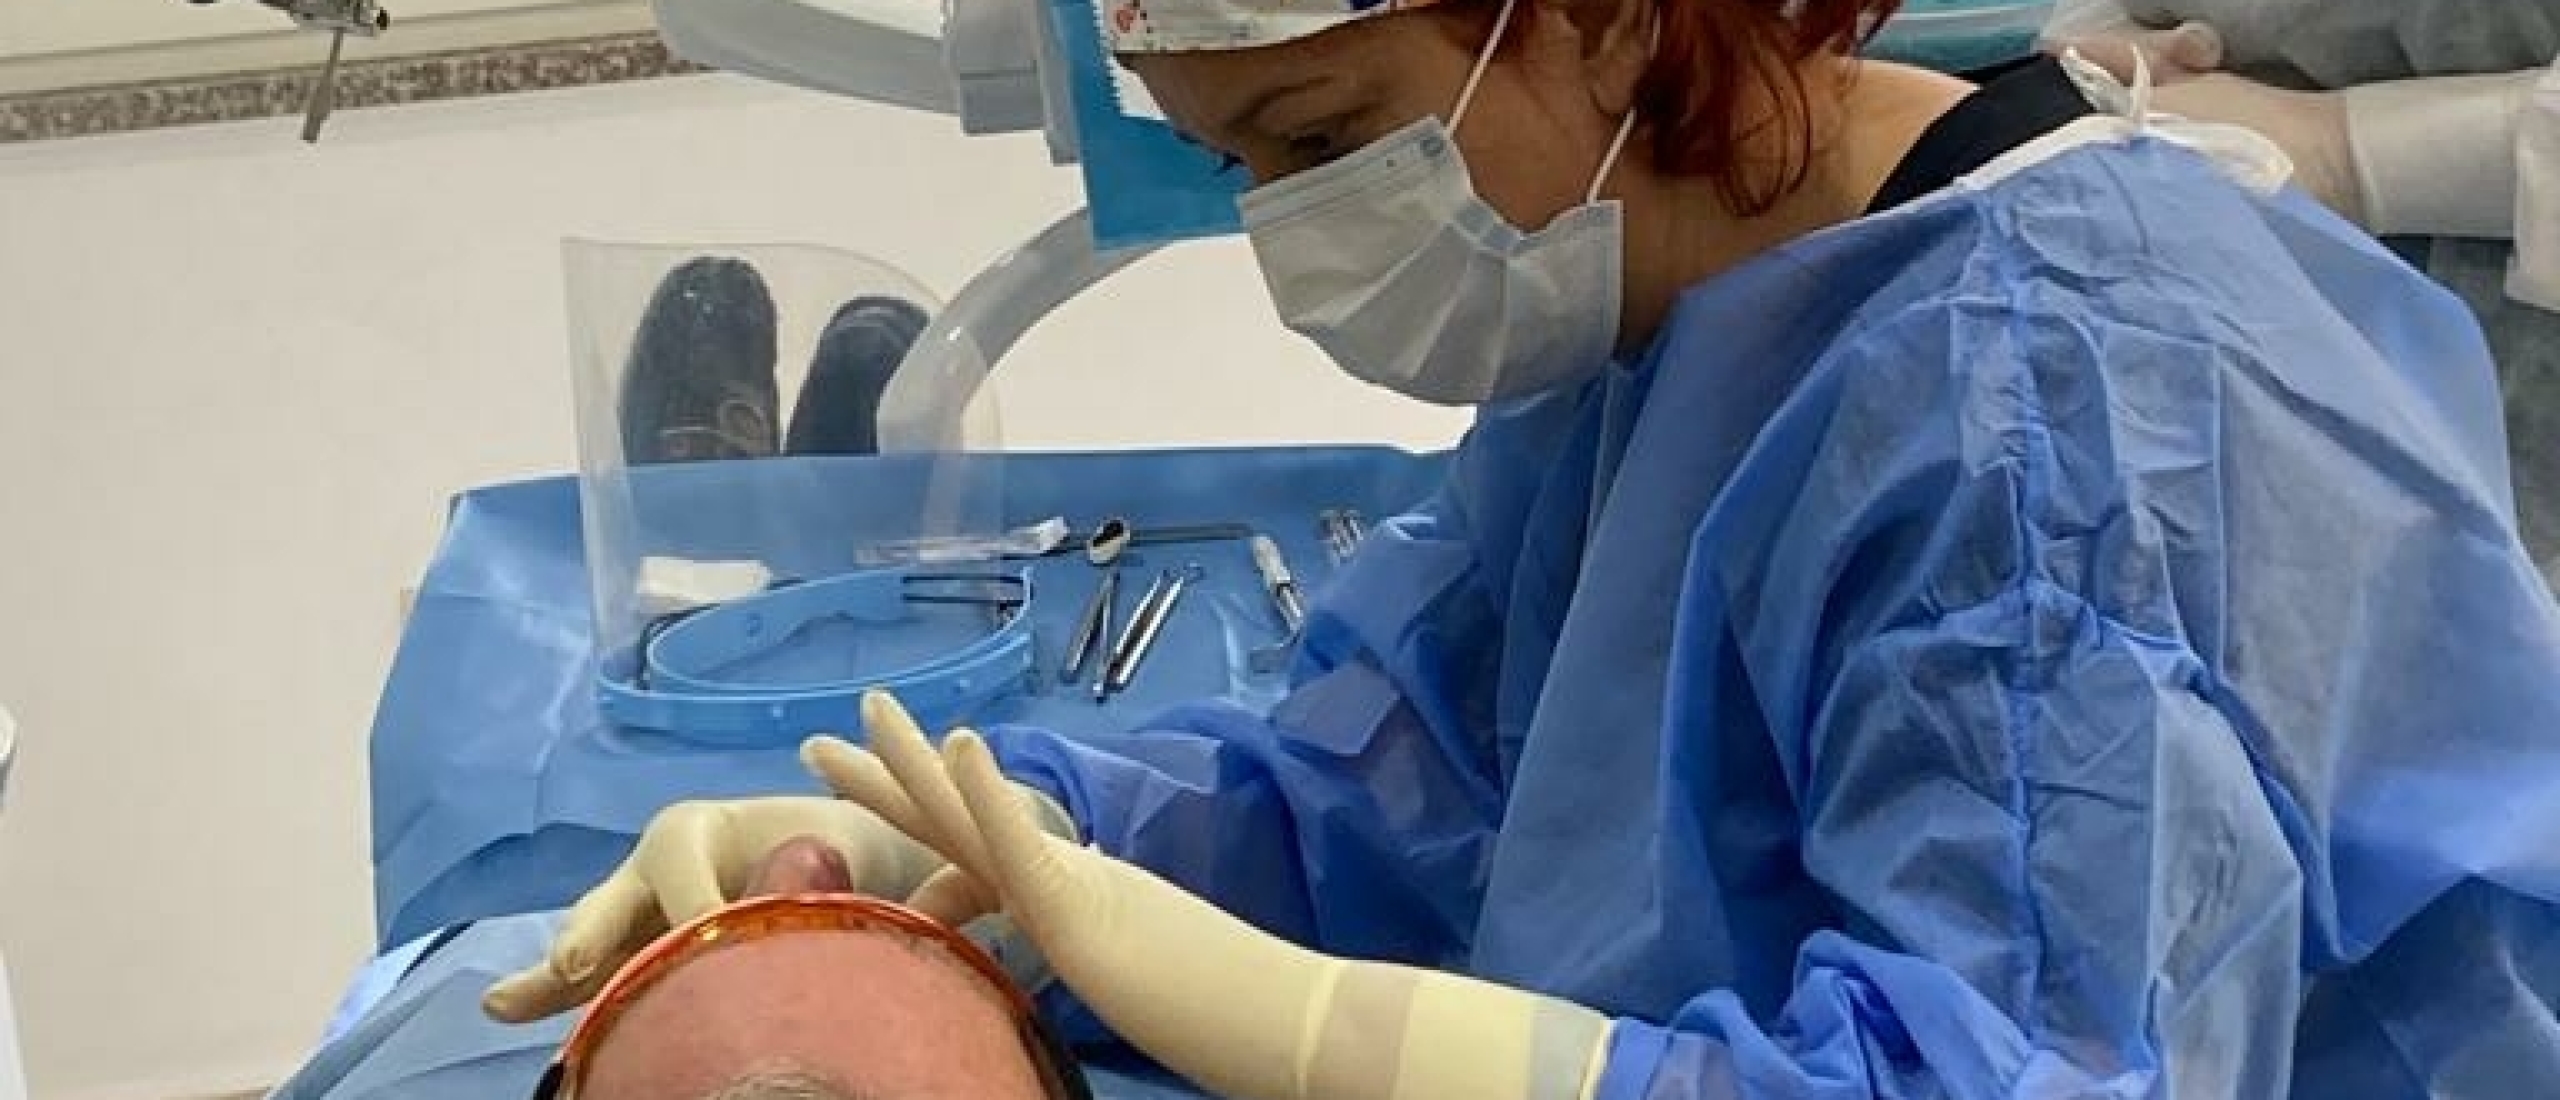 Tandarts / Kaakchirurgie behandelingen met Narcose: een uitkomst voor patiënten met tandartsangst